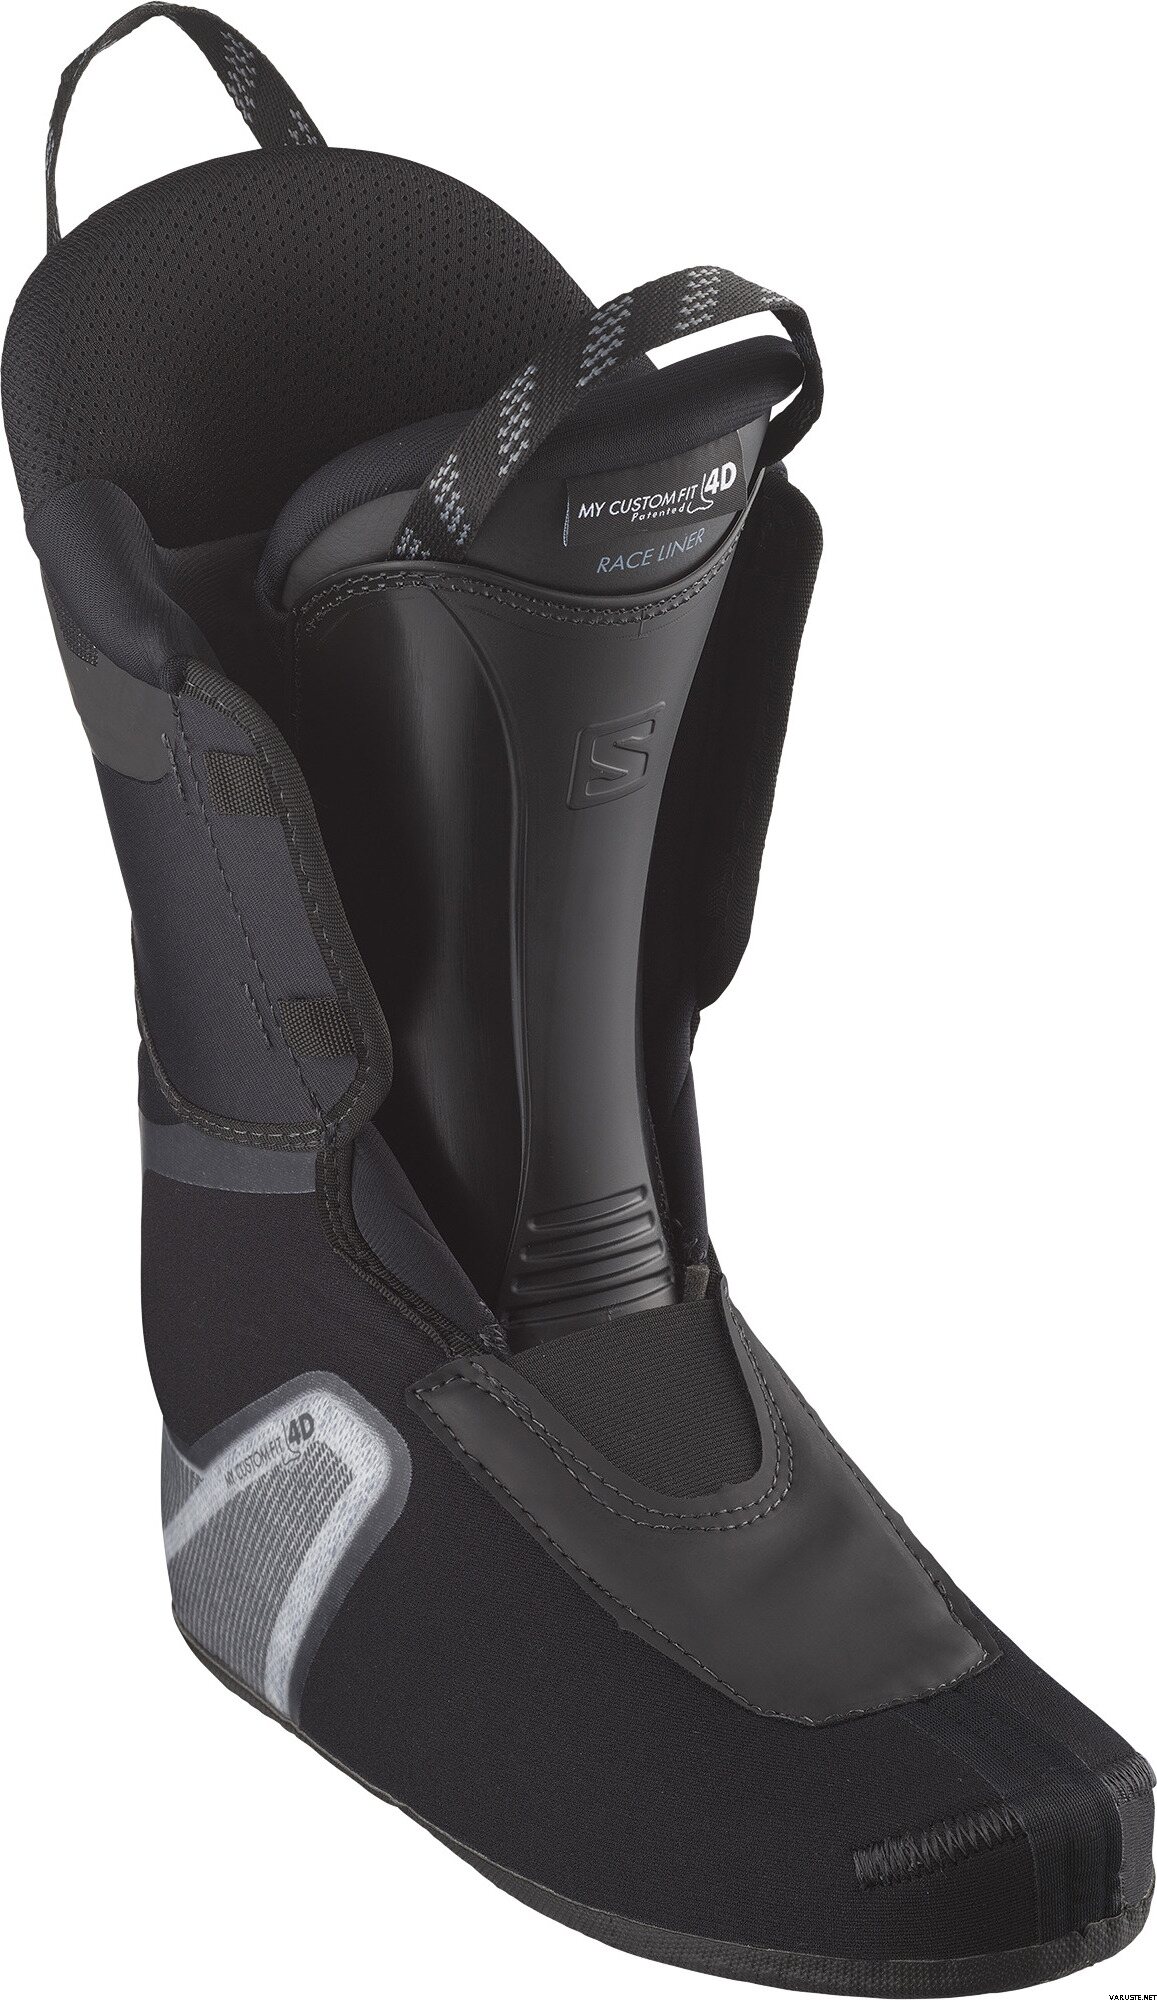 Salomon Shift Pro 130 AT | Ski Boots | Varuste.net 日本語